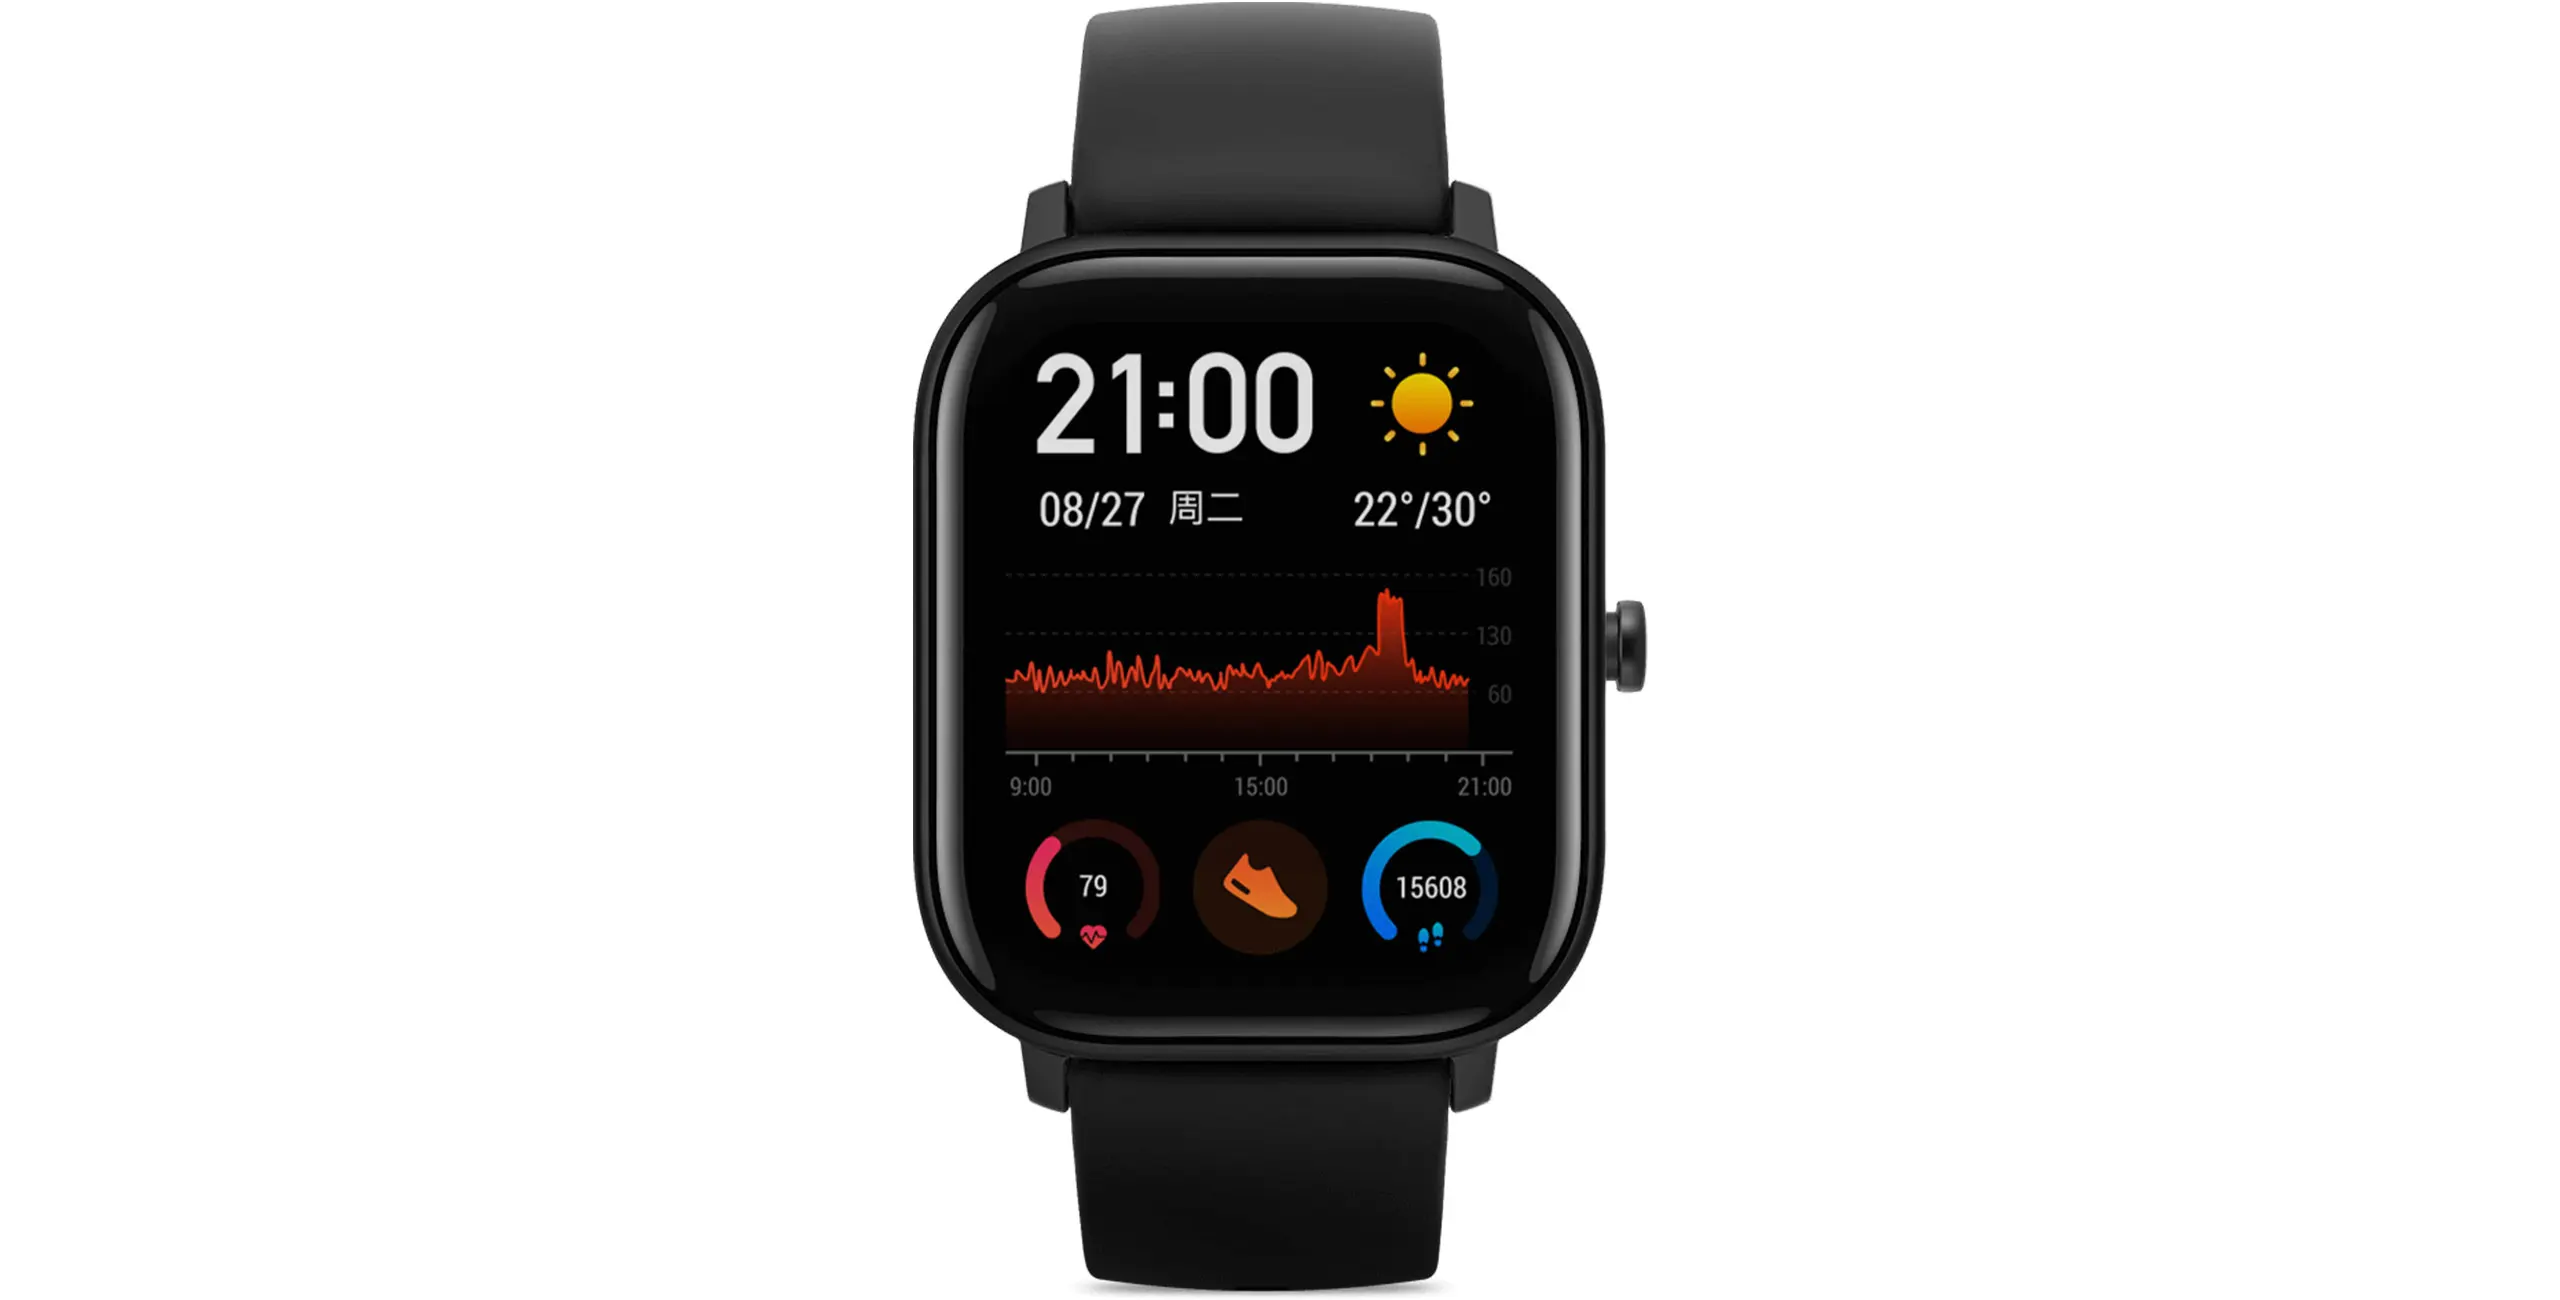 Глобальная версия Xiaomi Huami Amazfit GTS смарт часы умные часы глобальная Смарт-часы gps 5ATM водонепроницаемые Смарт-часы здоровье Пульс AMOLED 12 Спортивные